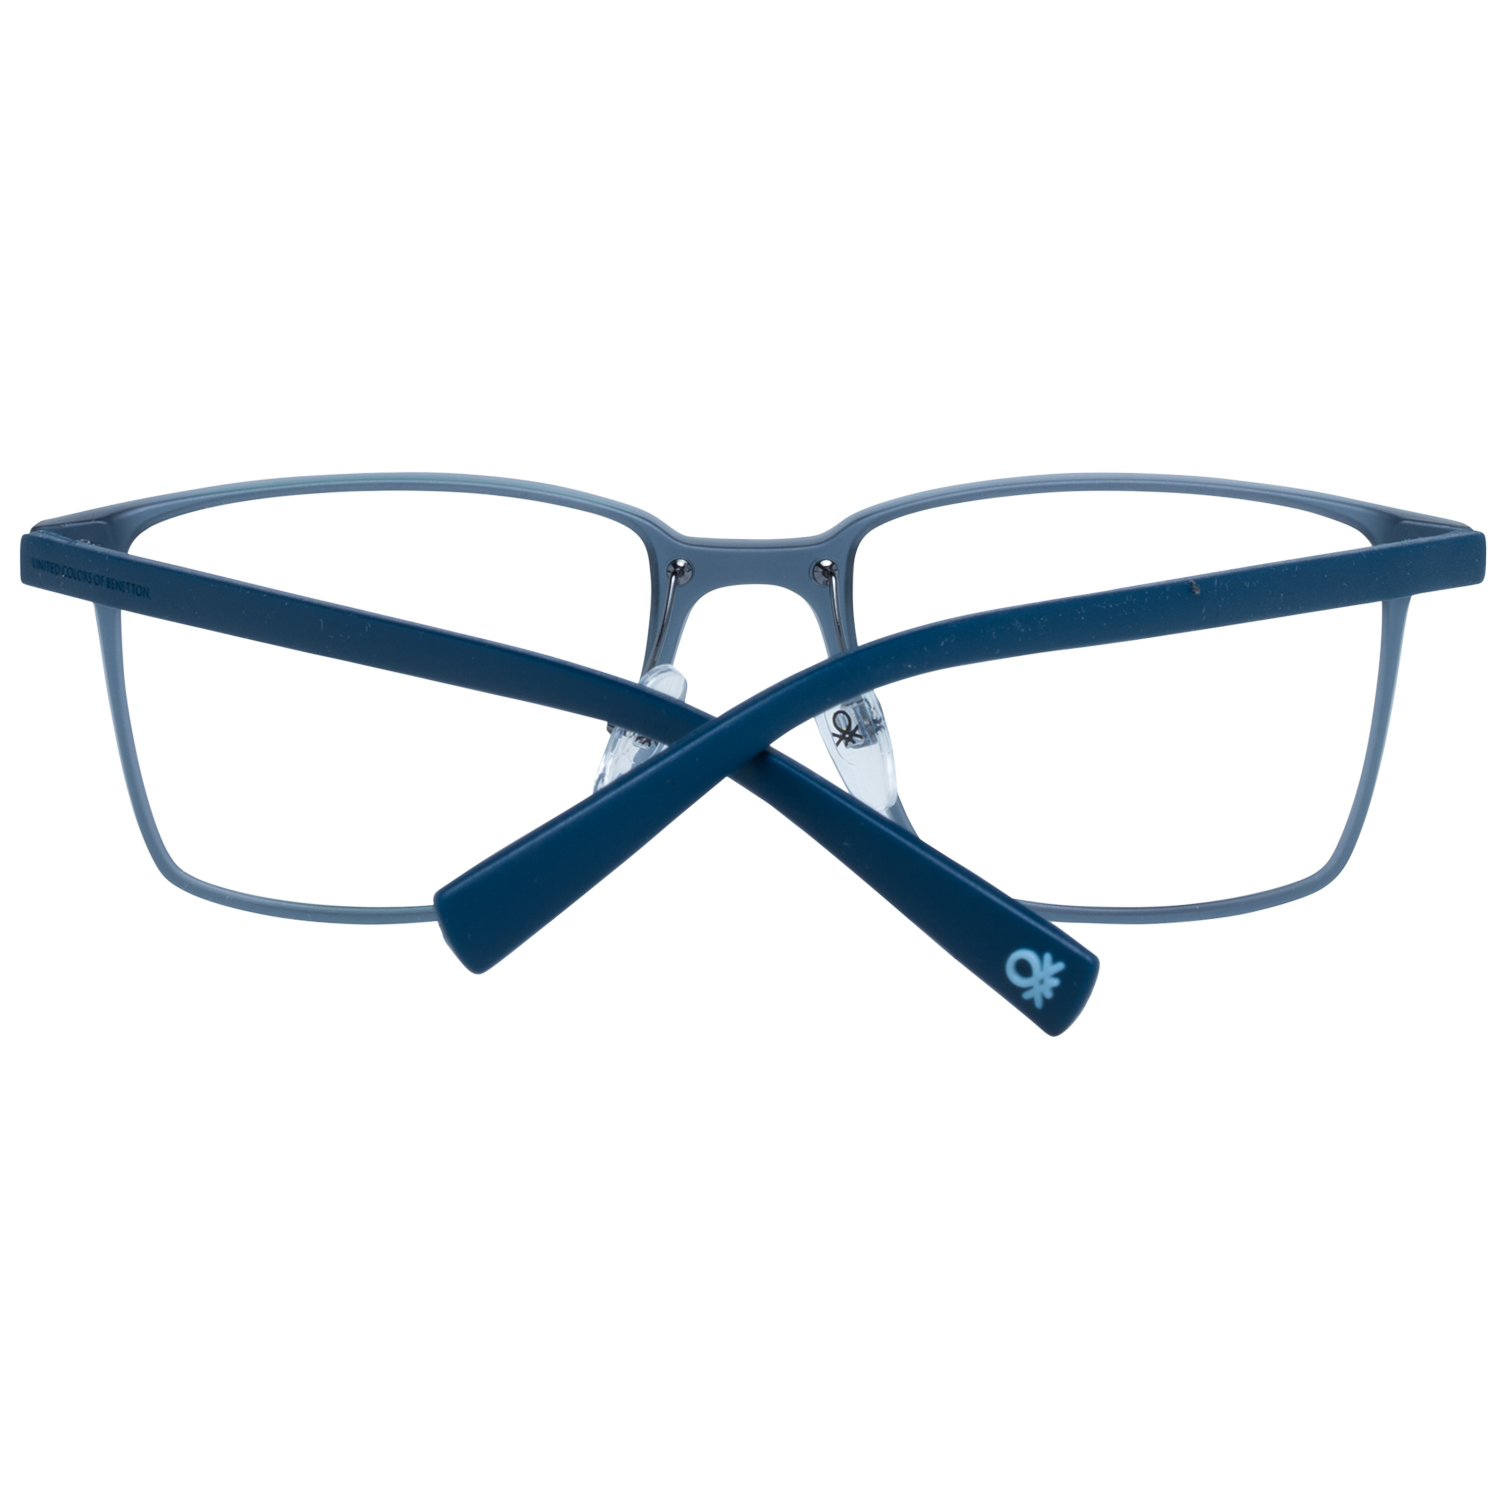 Benetton Frames Benetton Glasses Frames BEO1009 921 53 Eyeglasses Eyewear UK USA Australia 